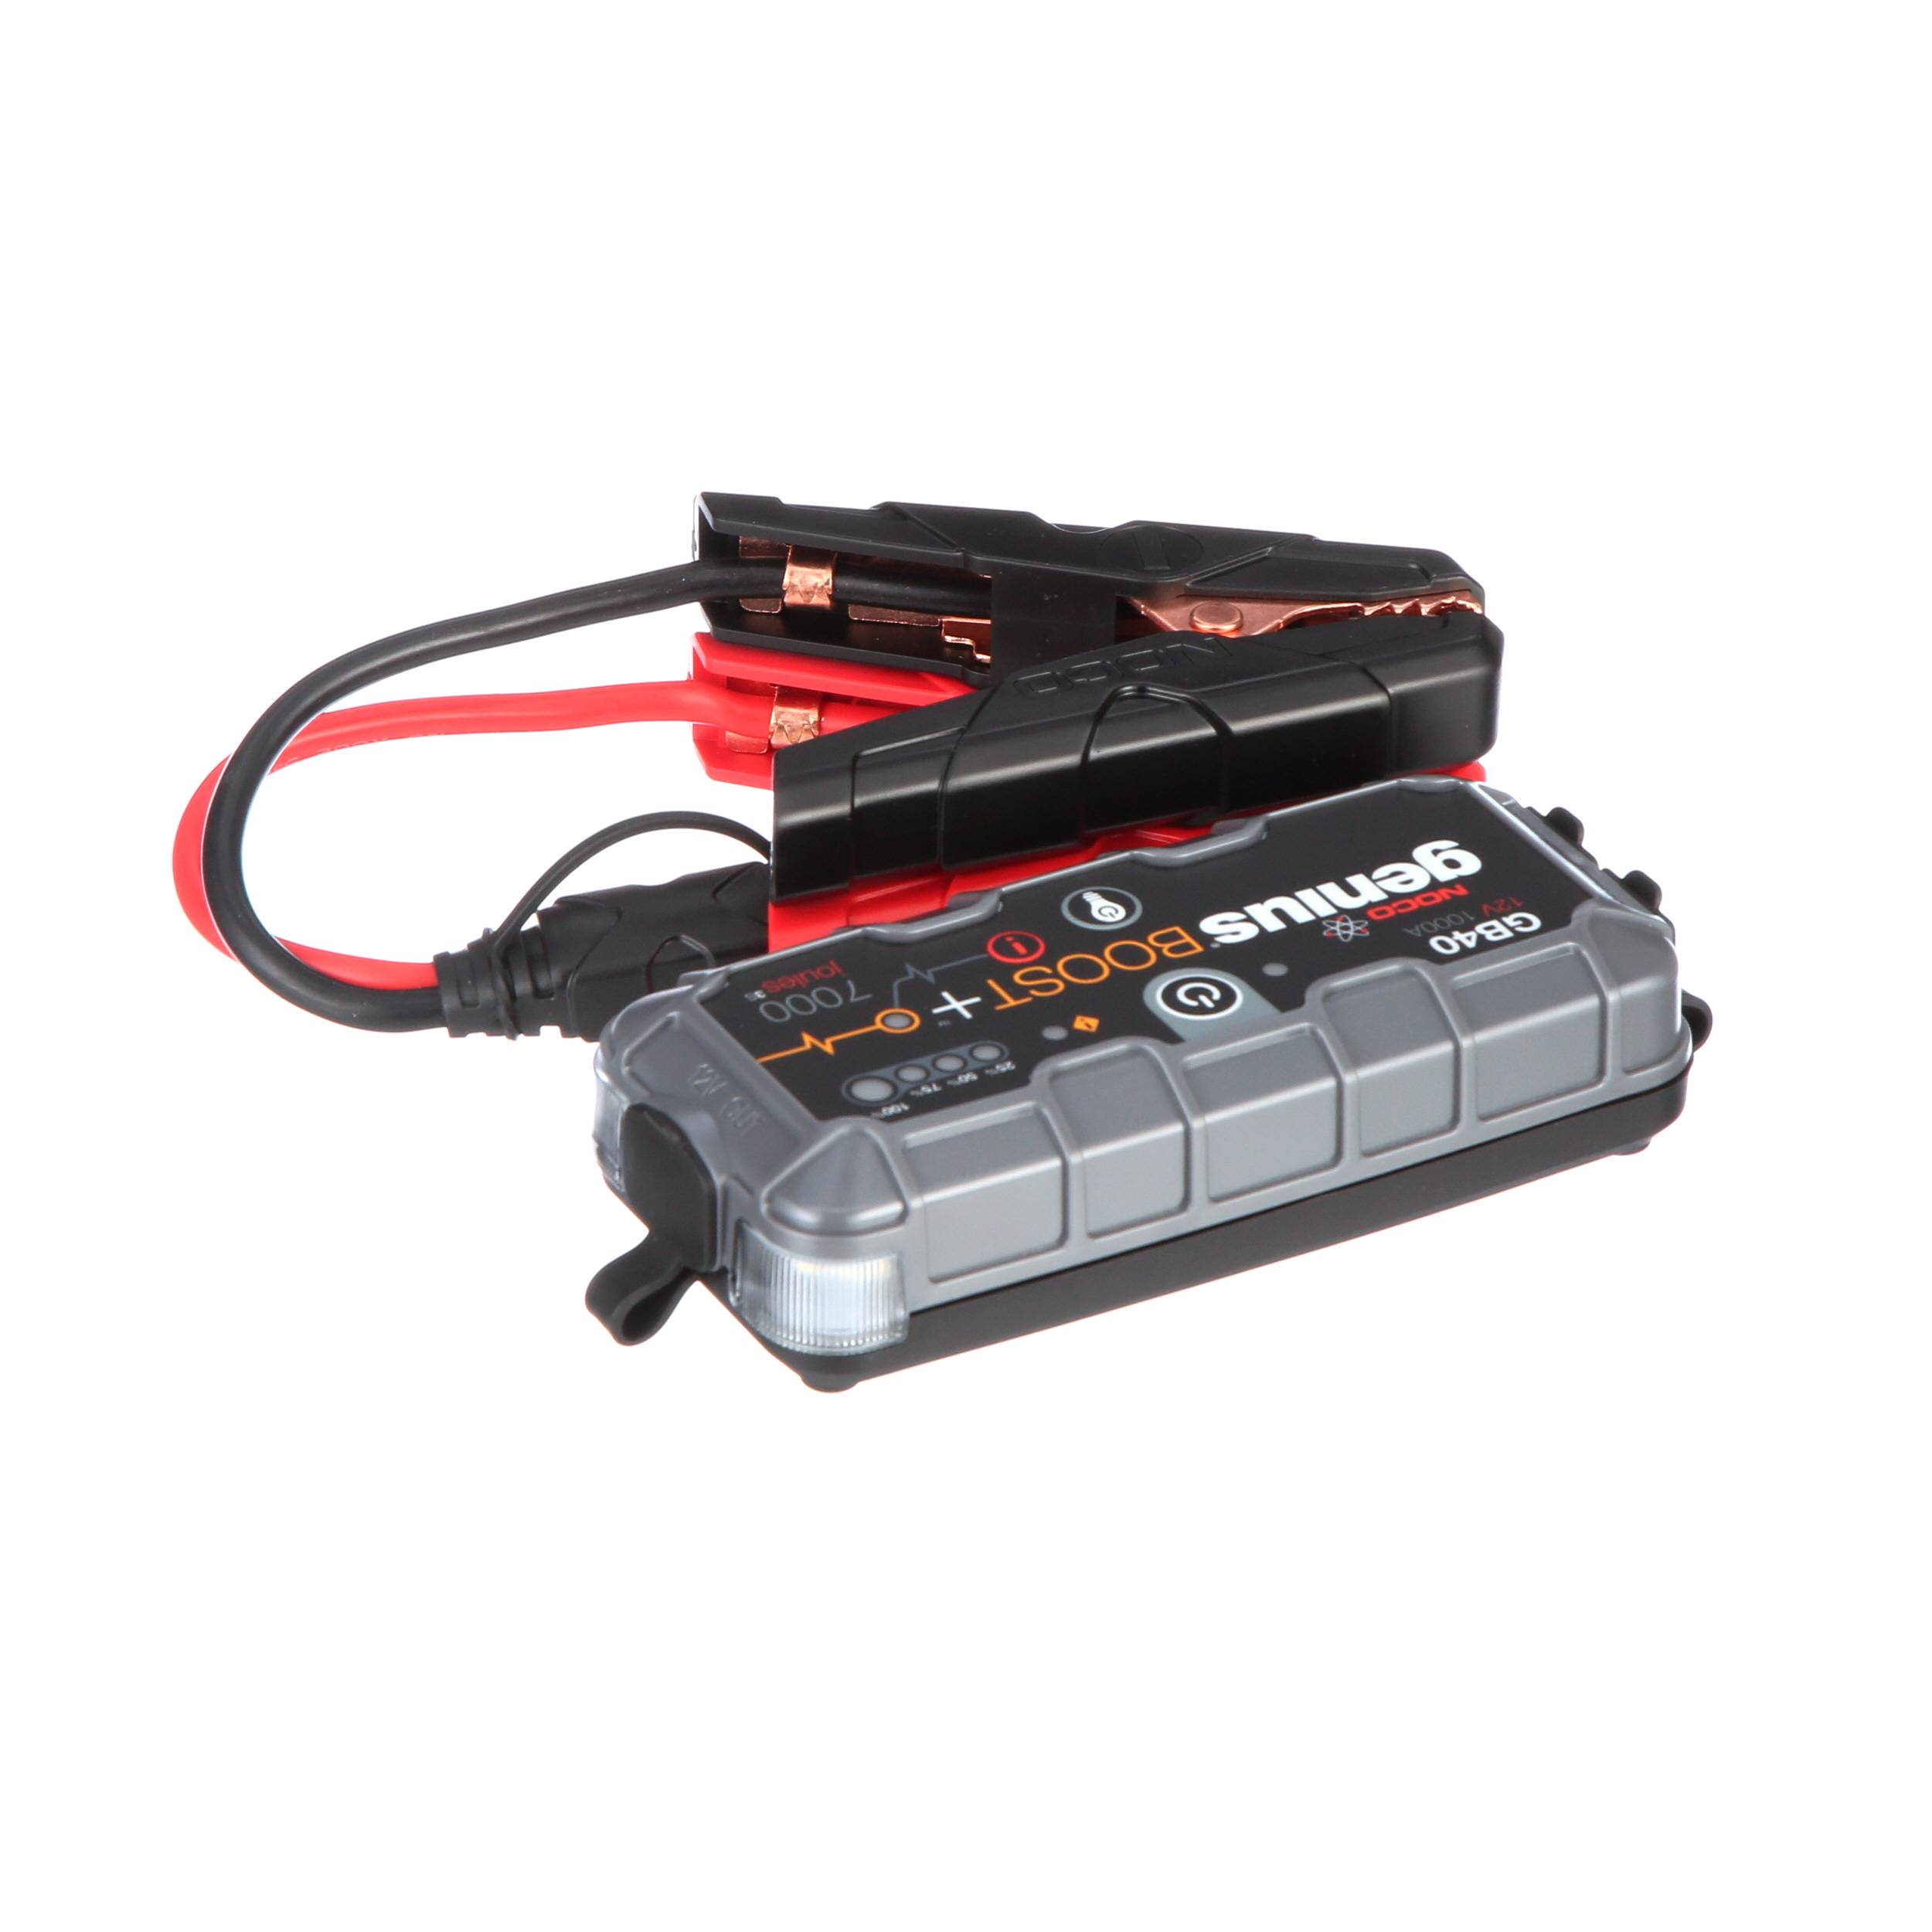 NOCO GB40 Boost Plus 12v 1000A Lithium Portable Car Battery Jump